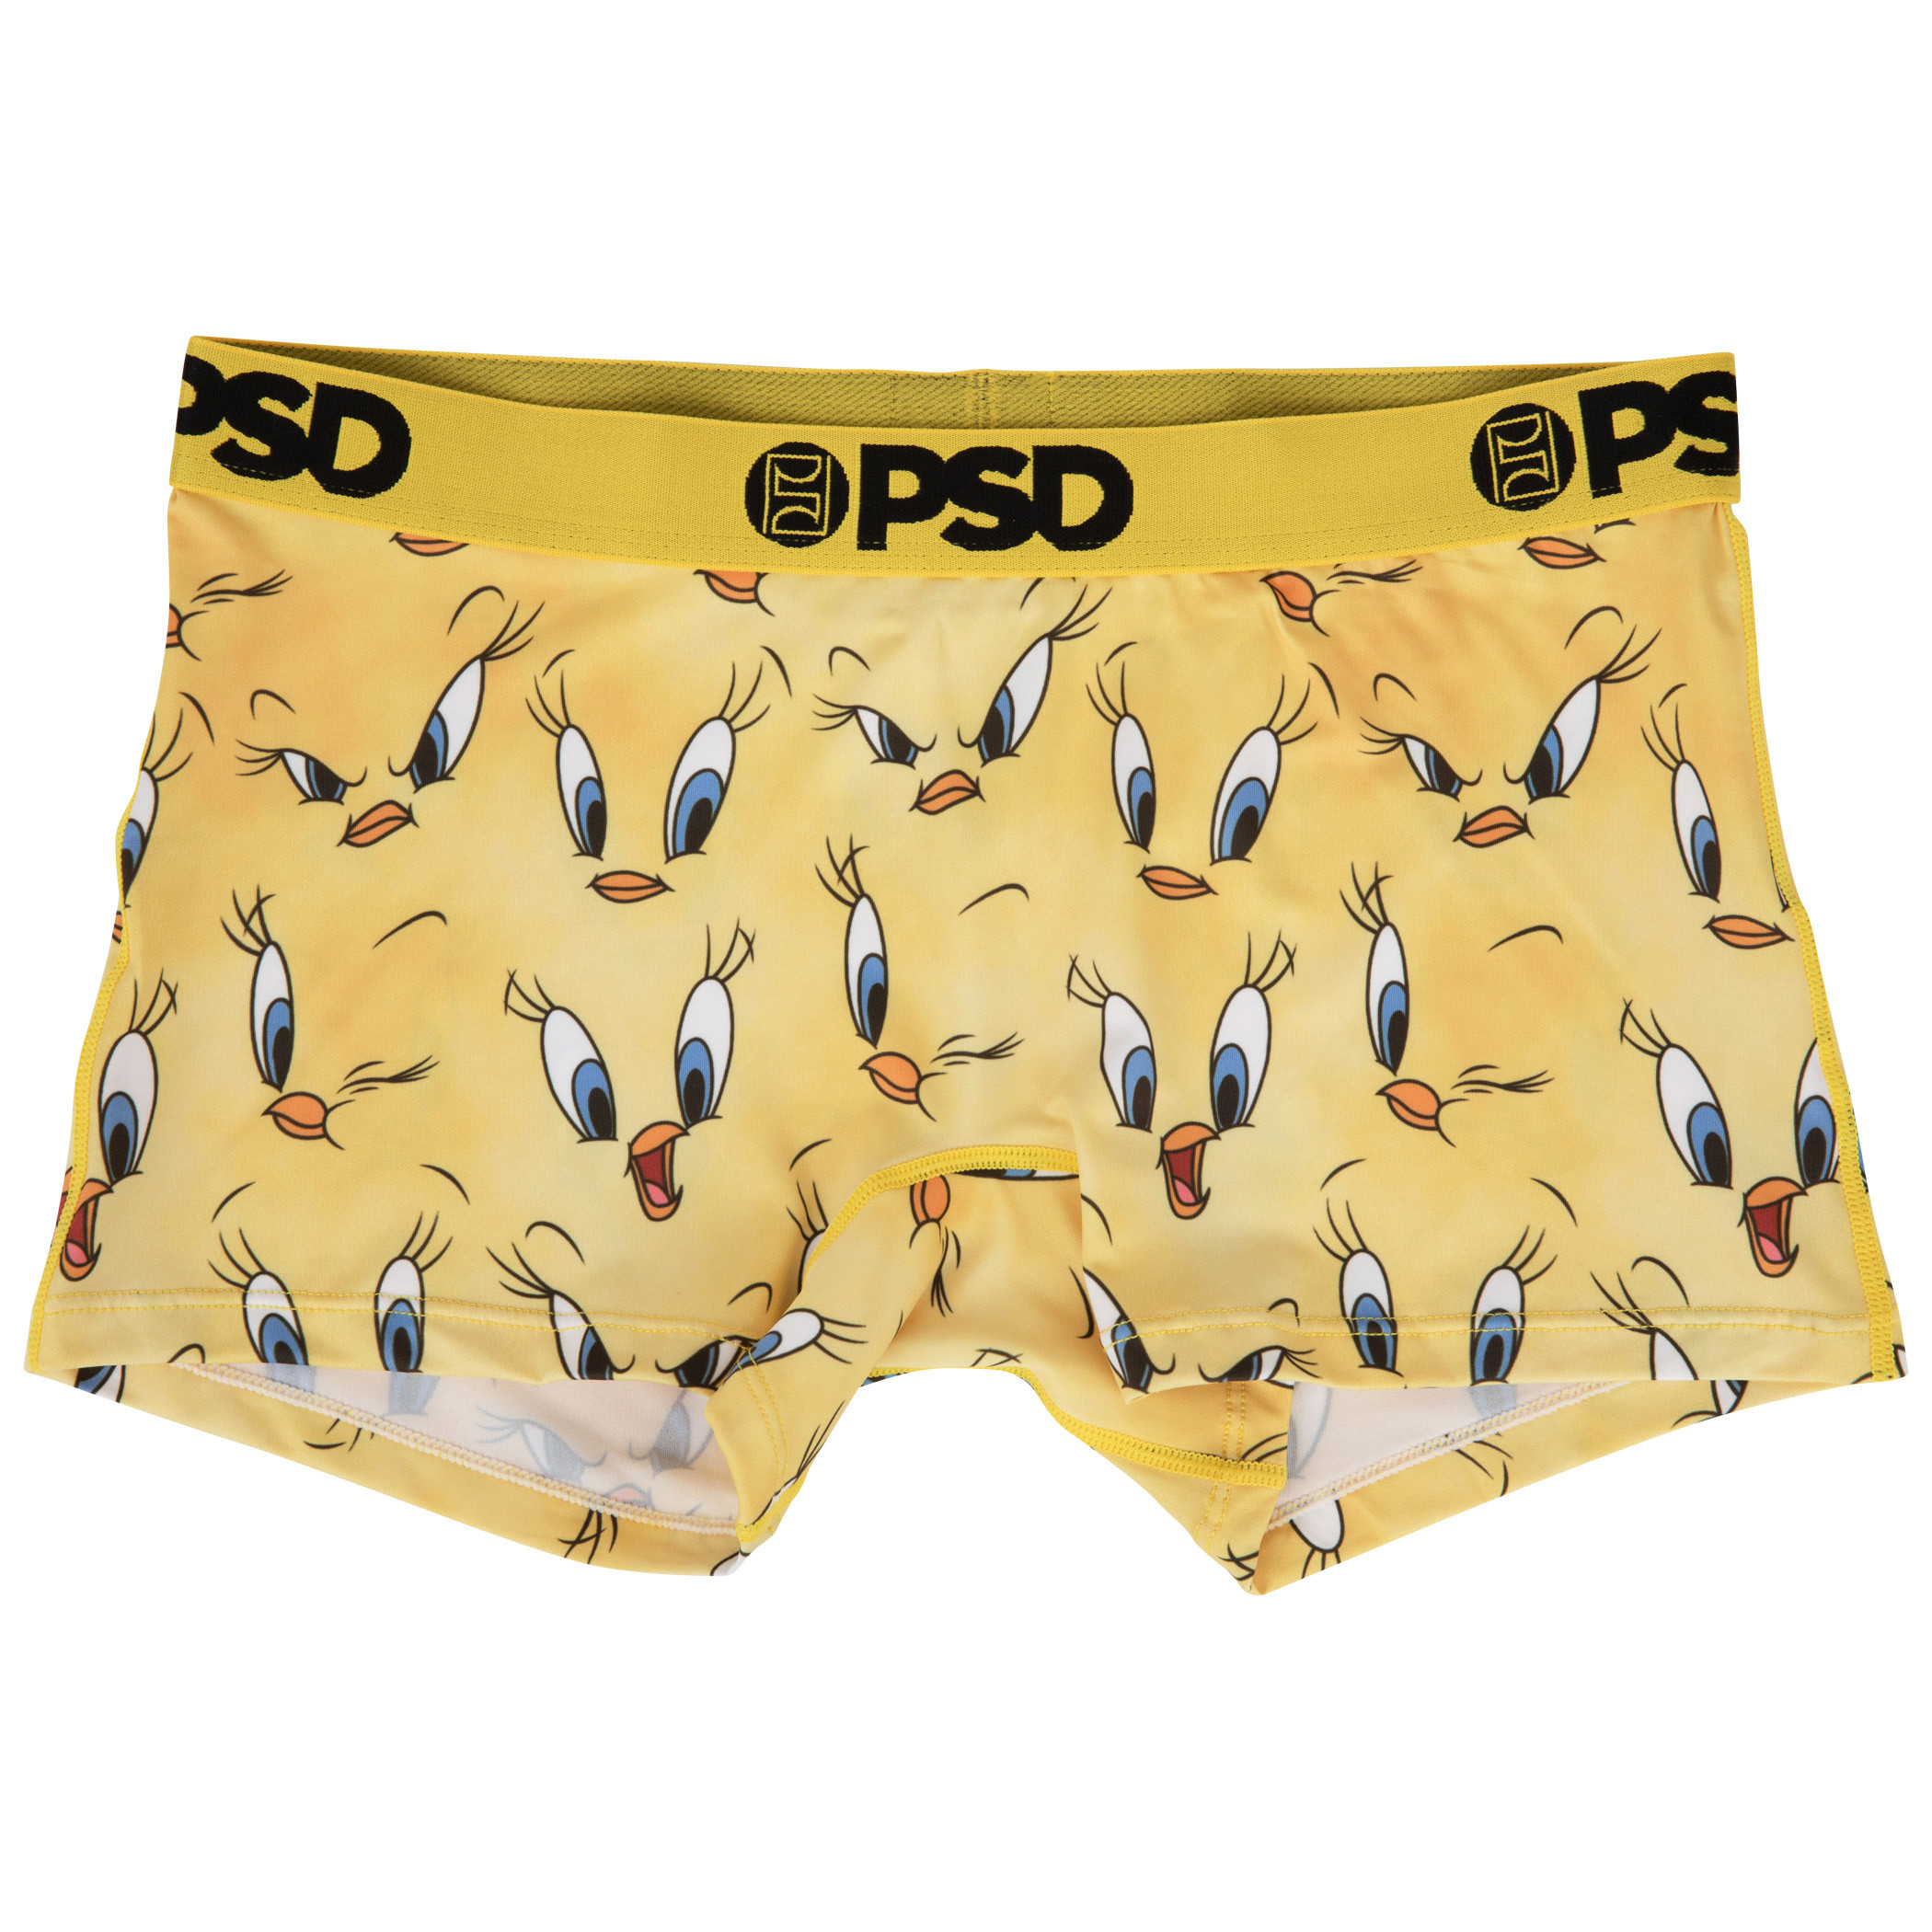 Tweety Bird Big Mood PSD Boy Shorts Underwear